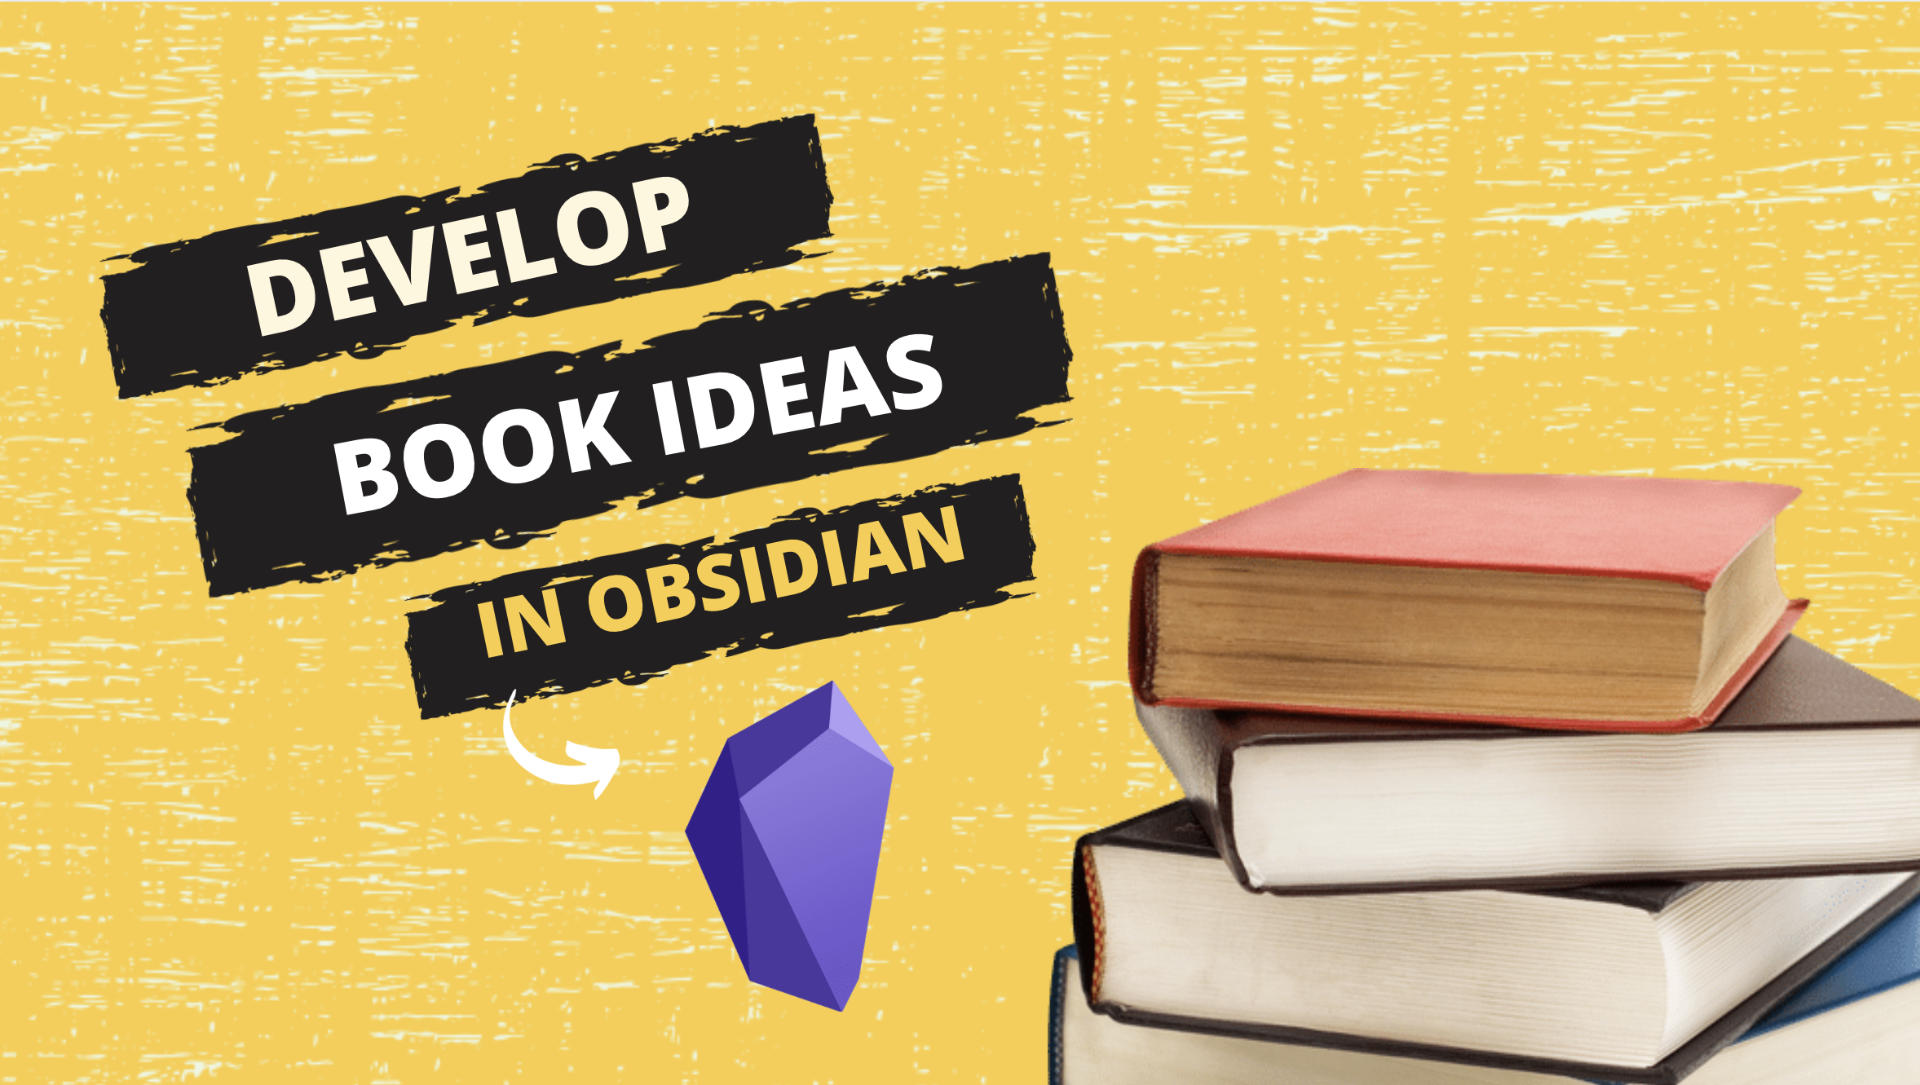 Developing Book Ideas in Obsidian